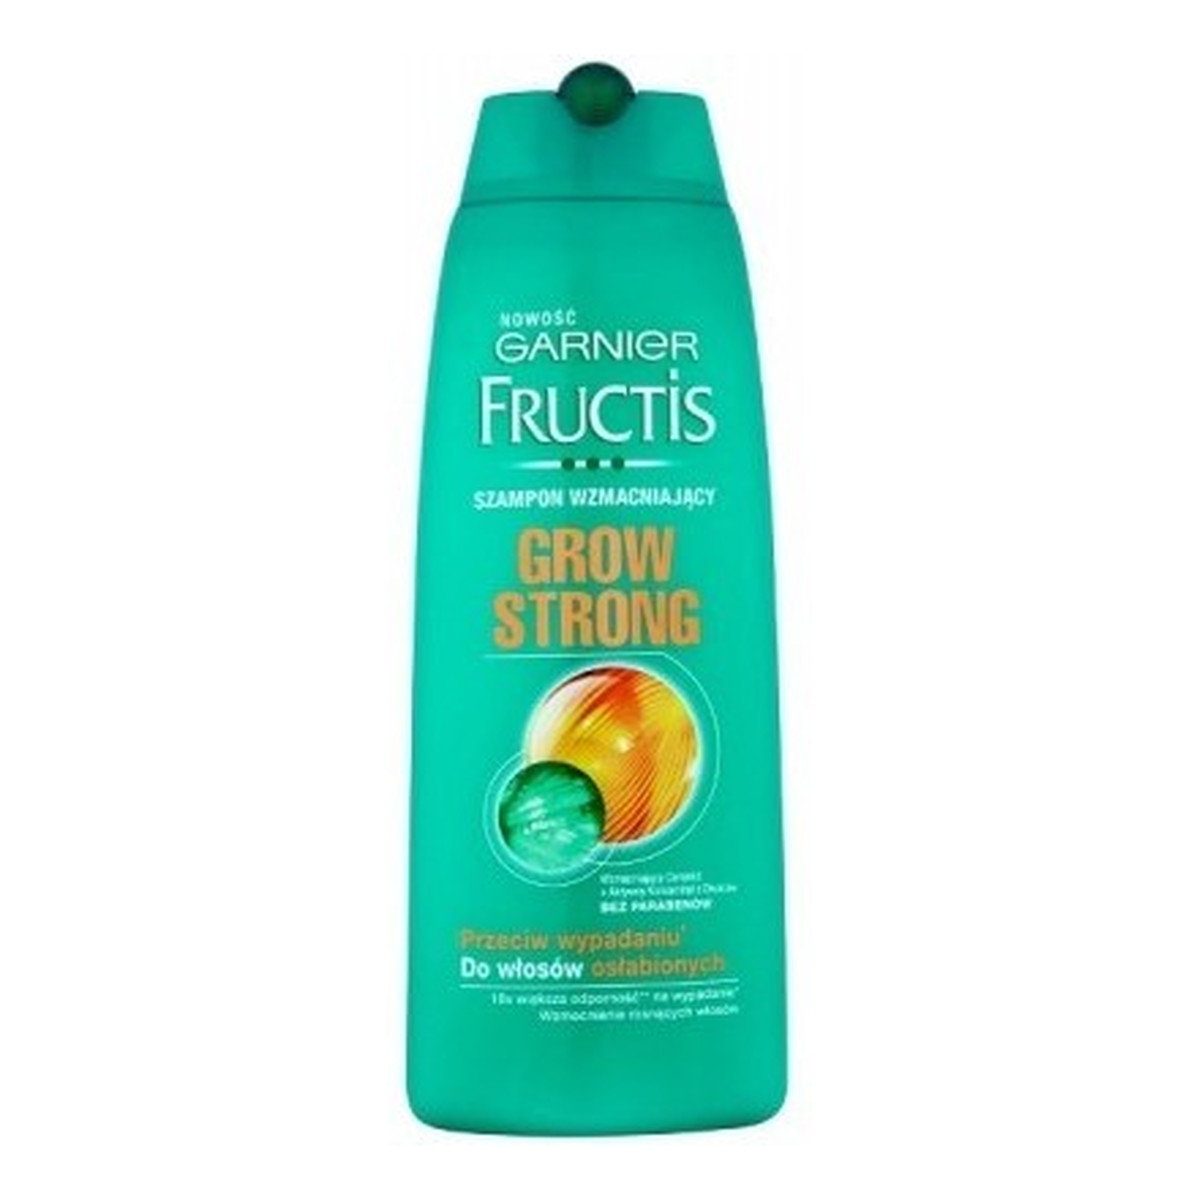 Garnier Fructis Grow Strong Szampon wzmacniający do włosów osłabionych 250ml